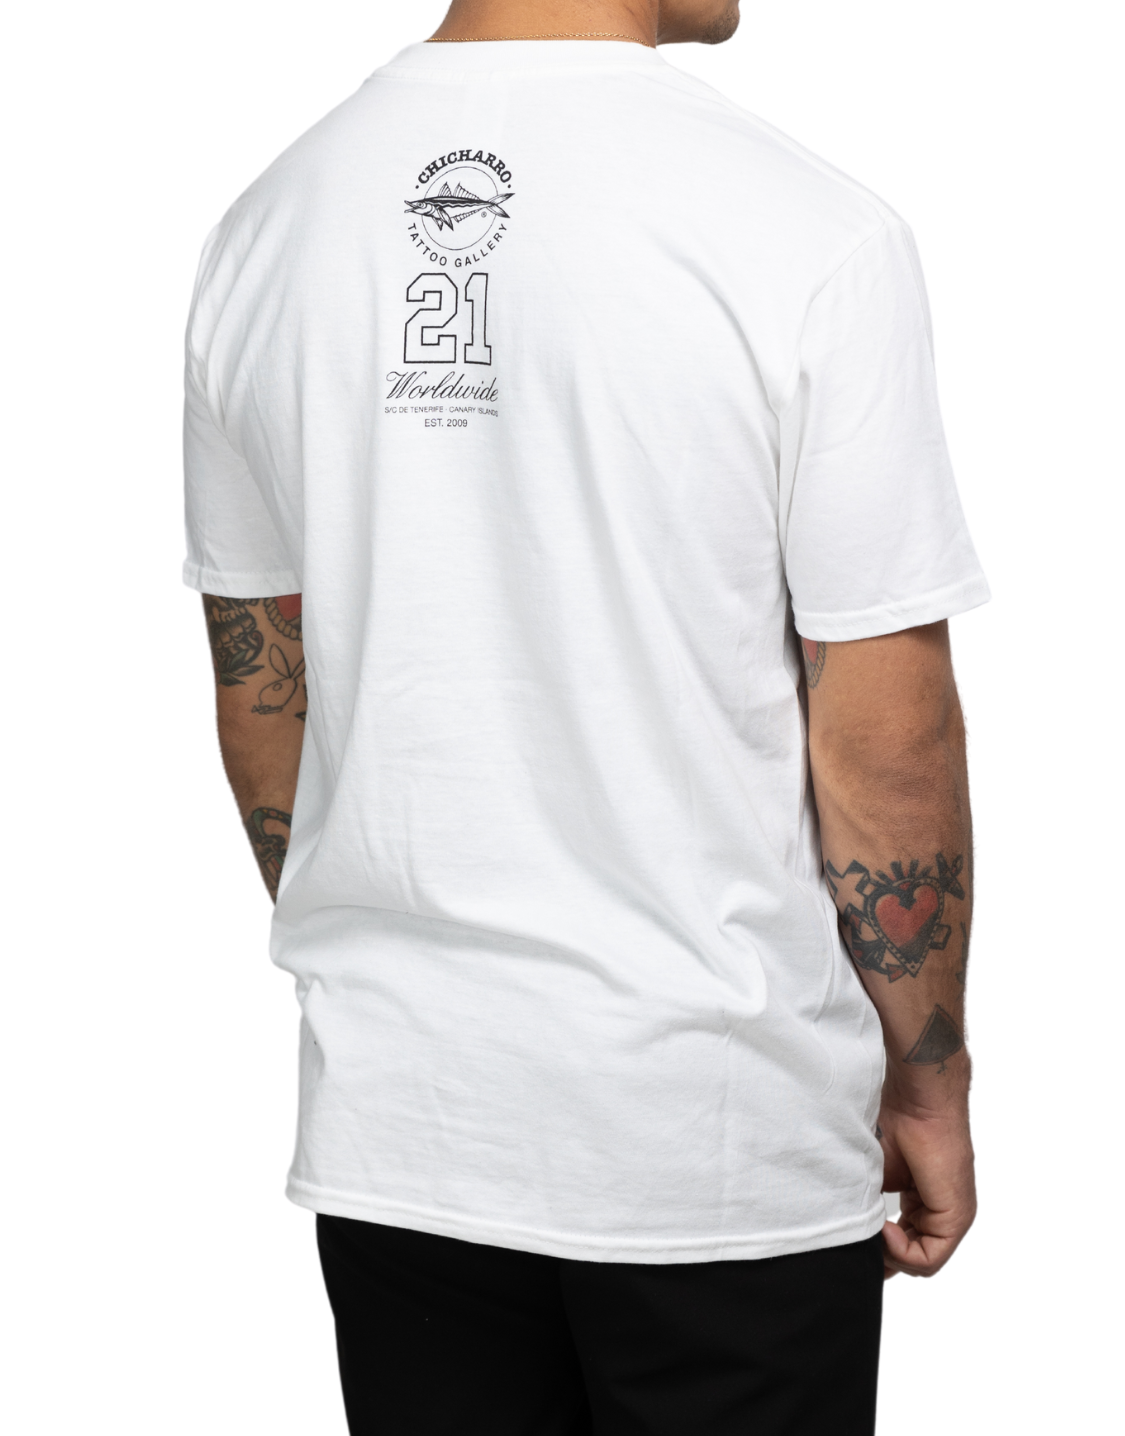 CHICHARRO TATTOO GALLERY Camiseta Worldwide Blanca/Negra